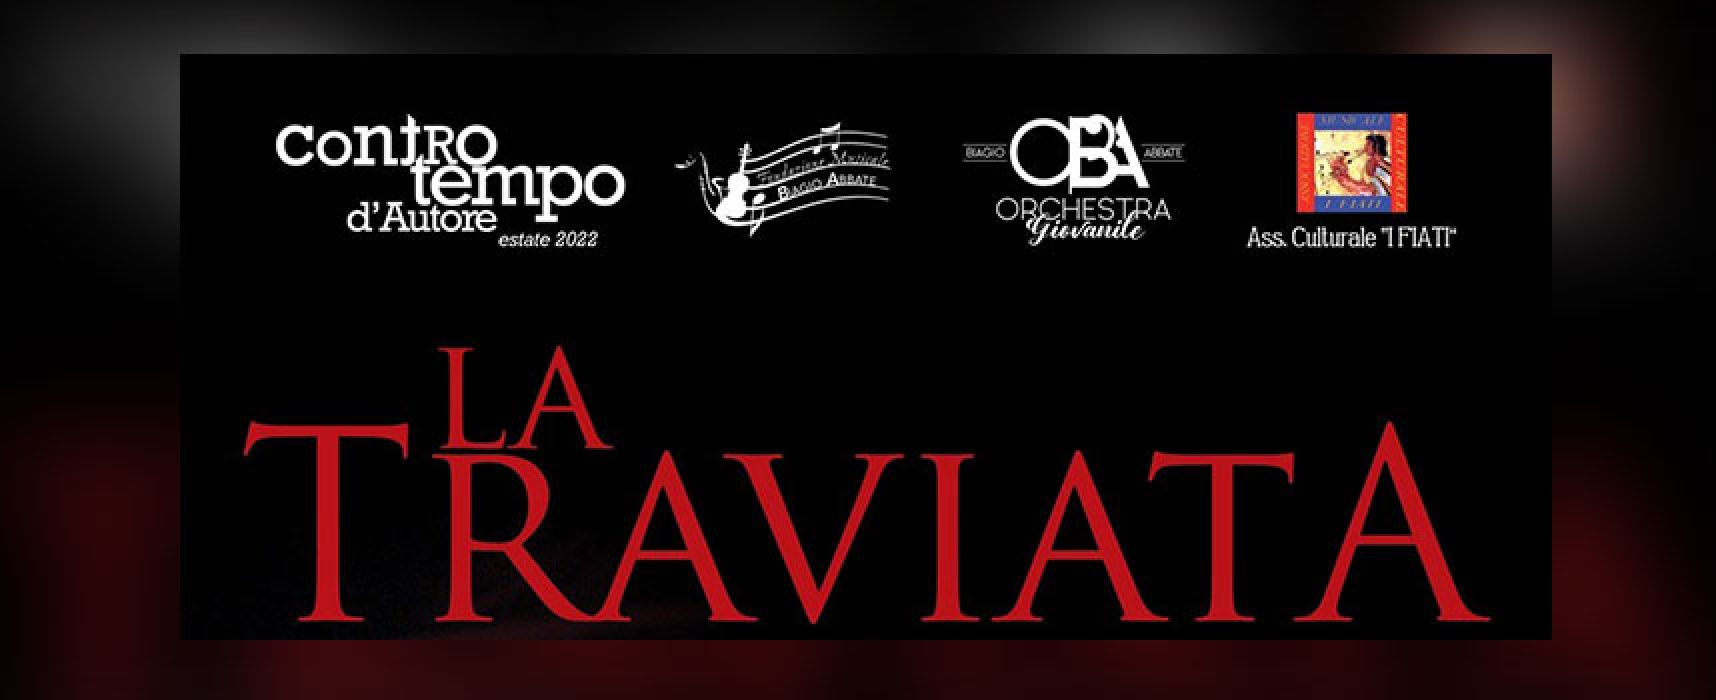 Al Teatro Mediterrano va in scena “La Traviata” / DETTAGLI